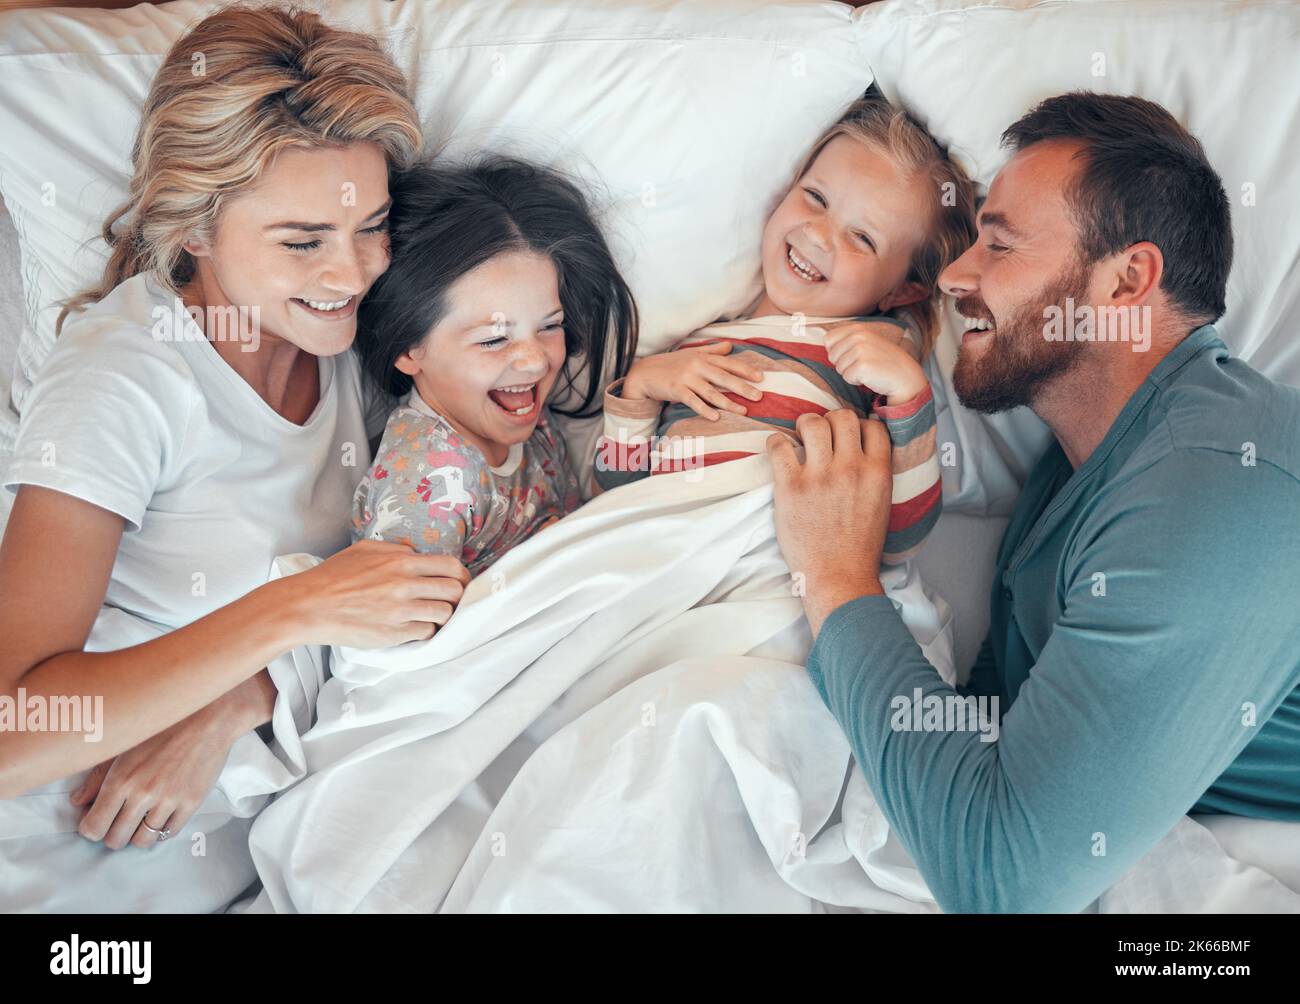 Fröhliche kaukasische Familie, die sich im Bett zusammen entspannt und spielt. Glückliche Eltern kitzeln ihre Kinder, während sie von oben im Bett liegen. Junge Familie mit Stockfoto